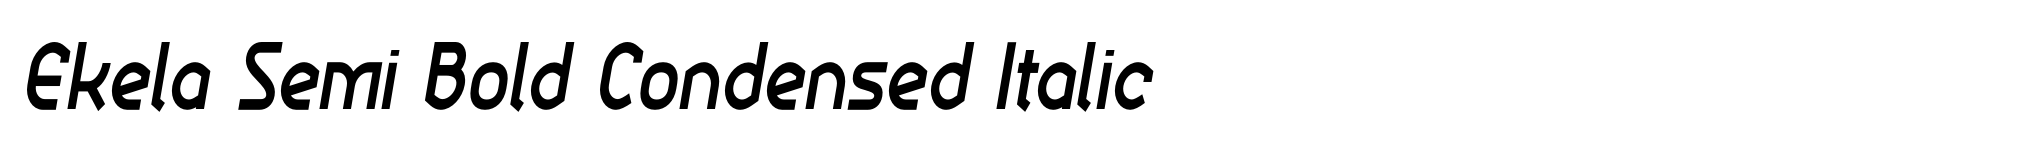 Ekela Semi Bold Condensed Italic image